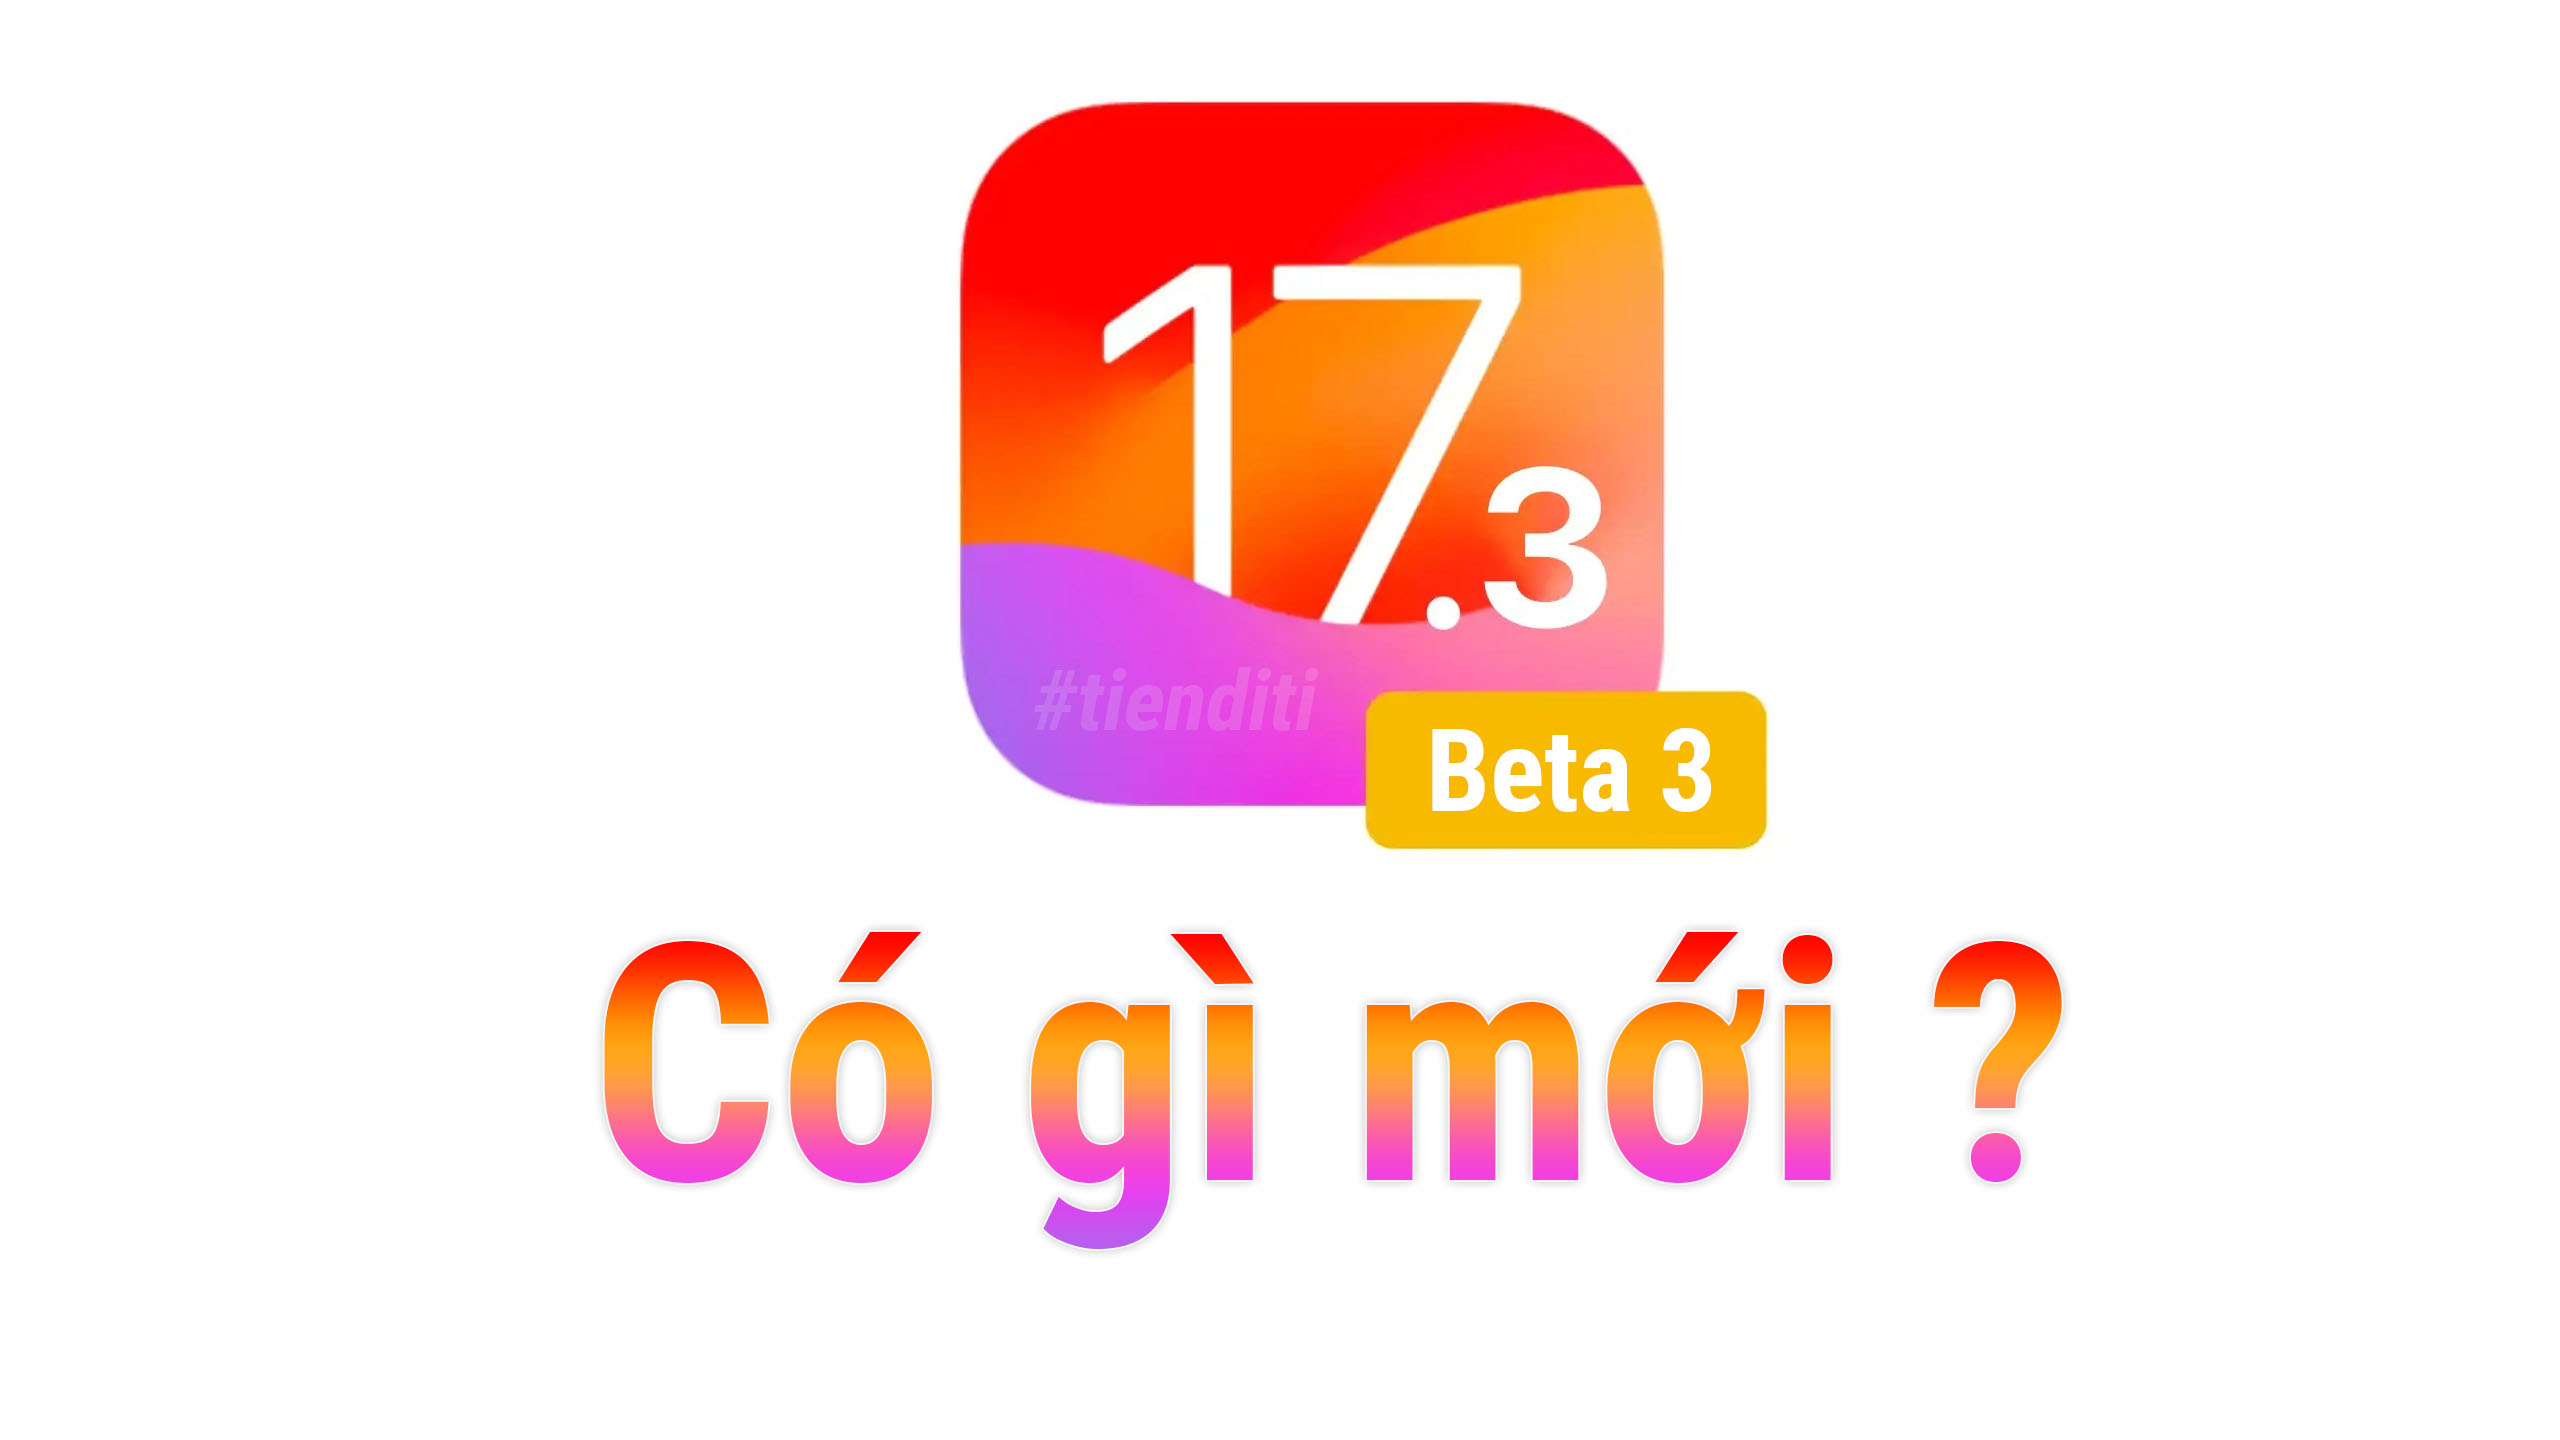 Apple phát hành iOS 17.3 beta 3 sau khi rút beta 2